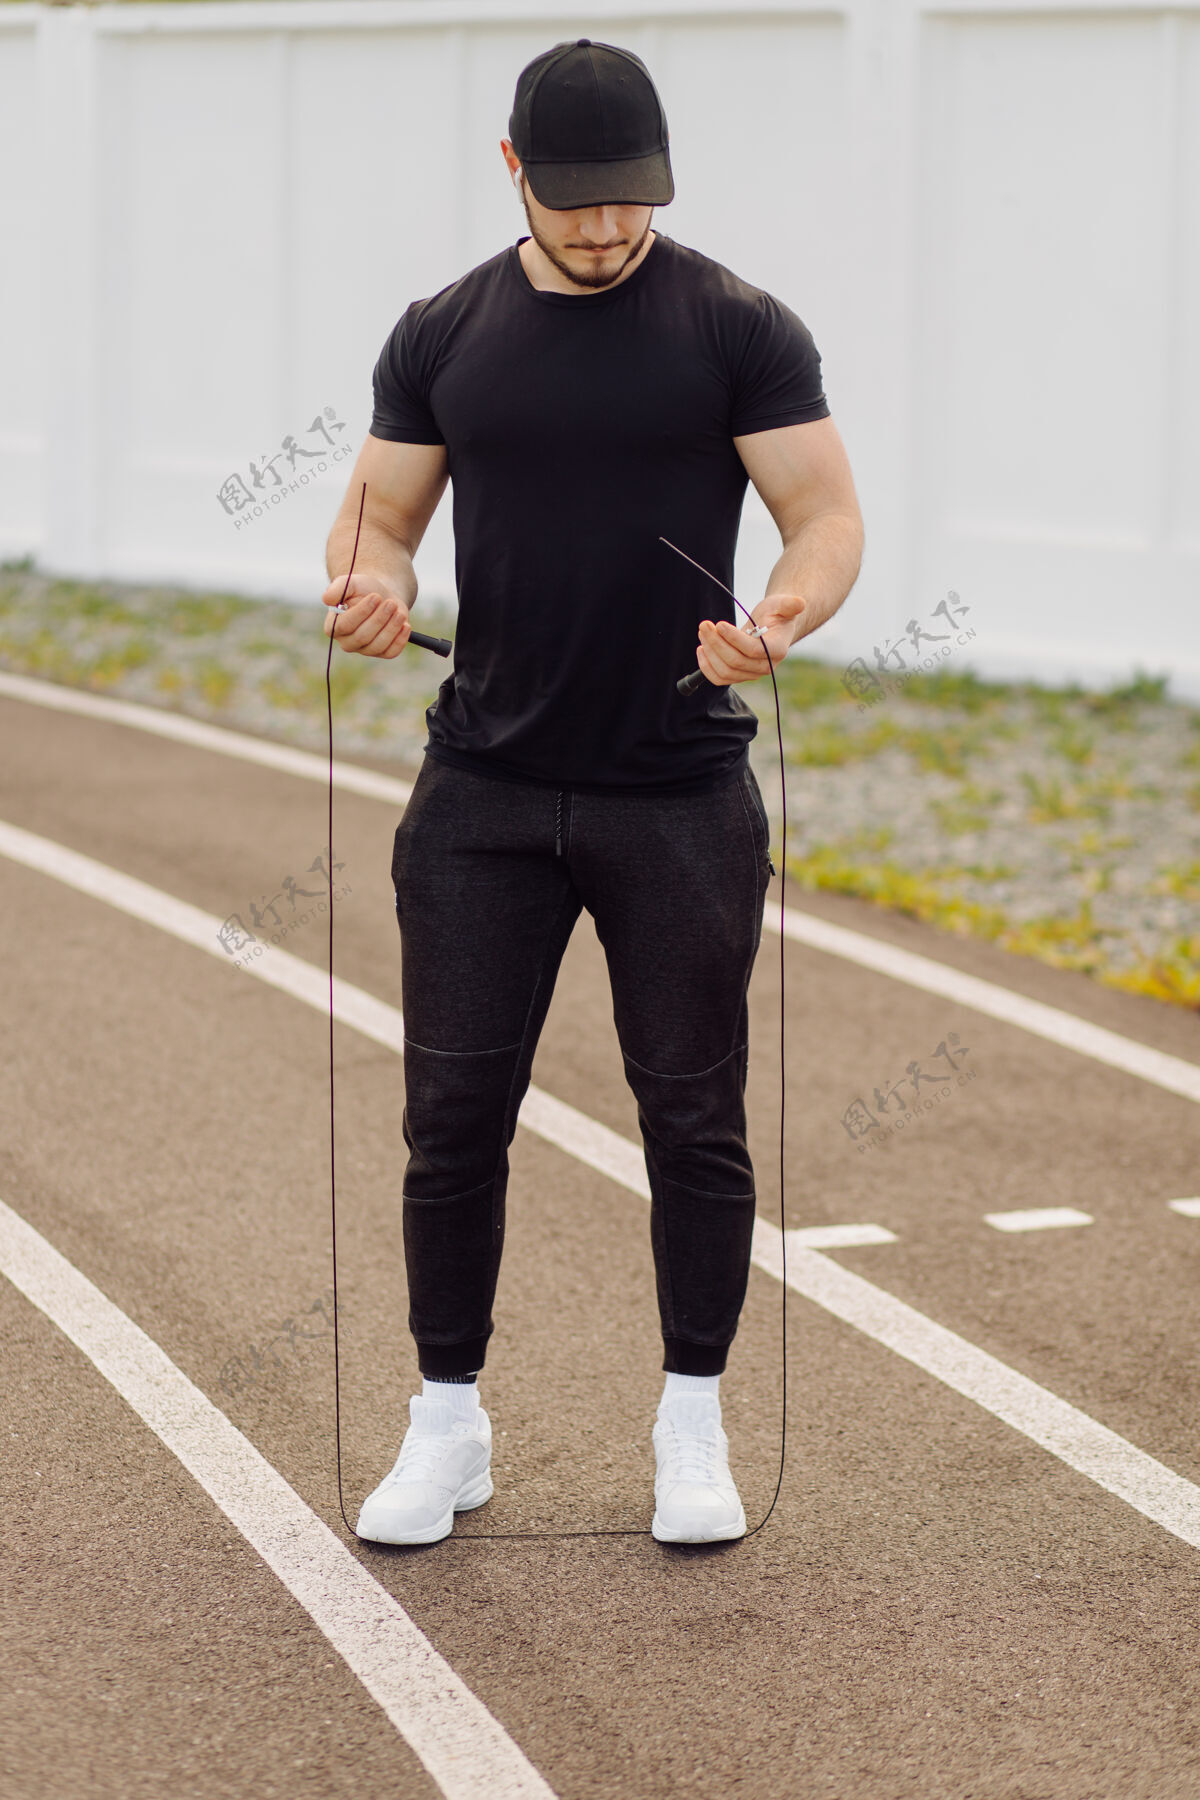 娱乐男运动员在健身房外做健身训练力量活跃有氧运动